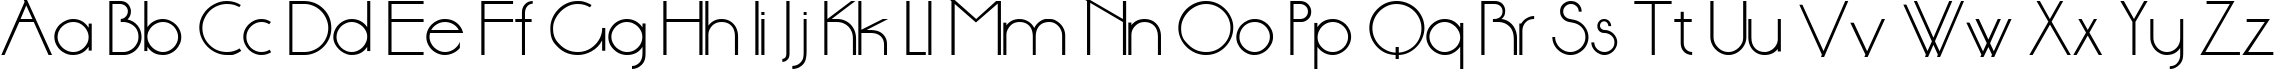 Пример написания английского алфавита шрифтом cyr_DS Standart